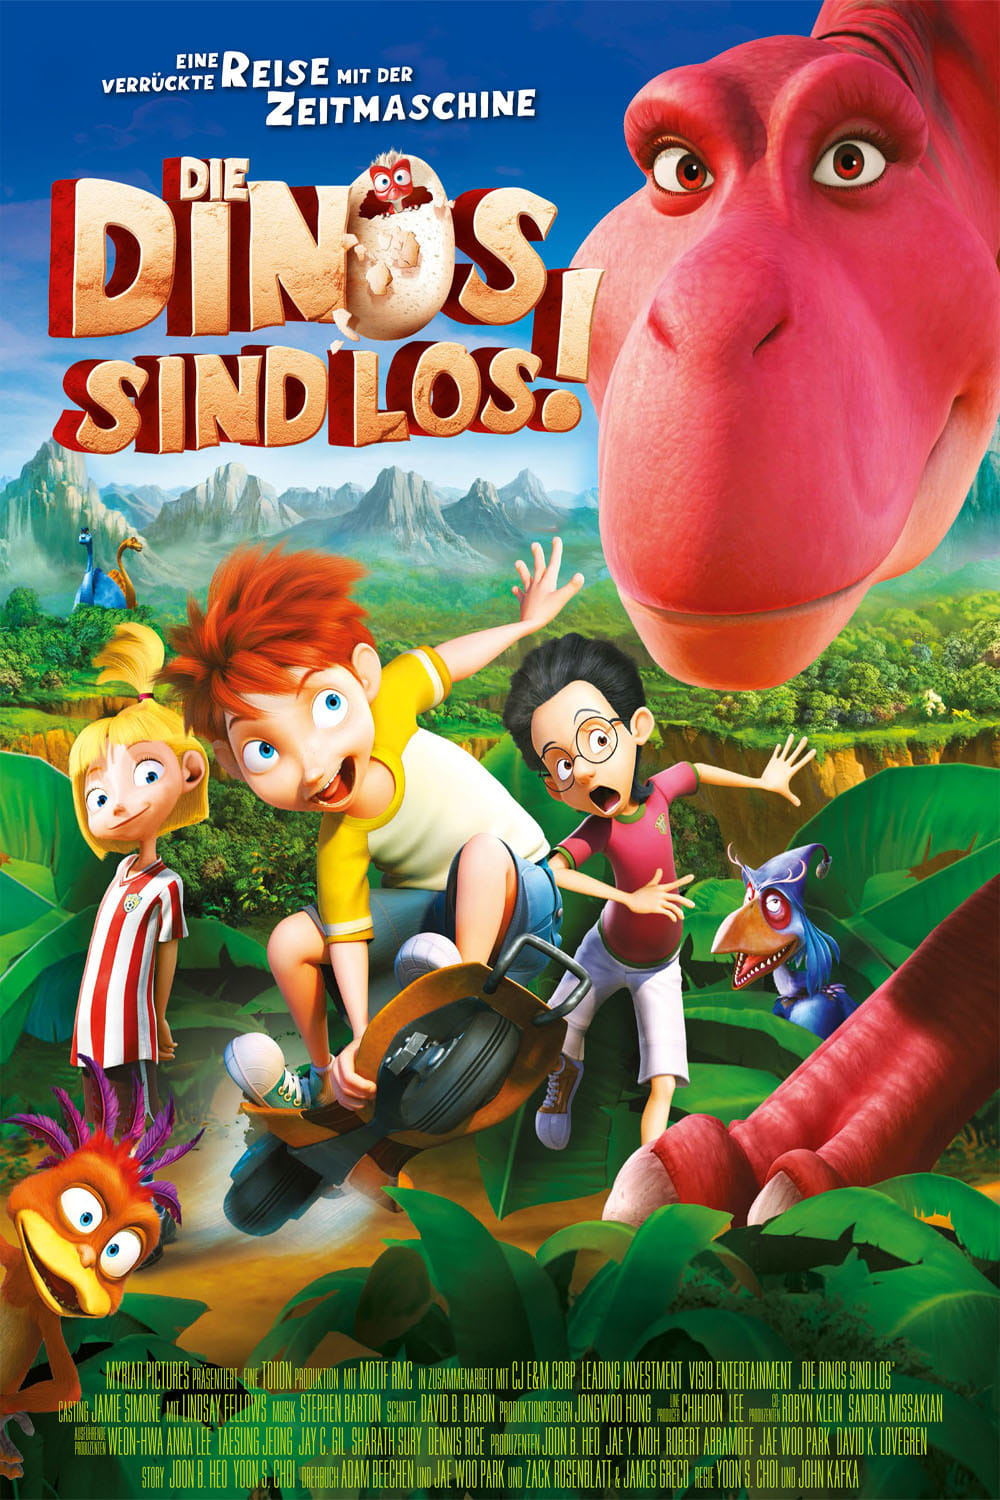 Plakat von "Die Dinos sind los"